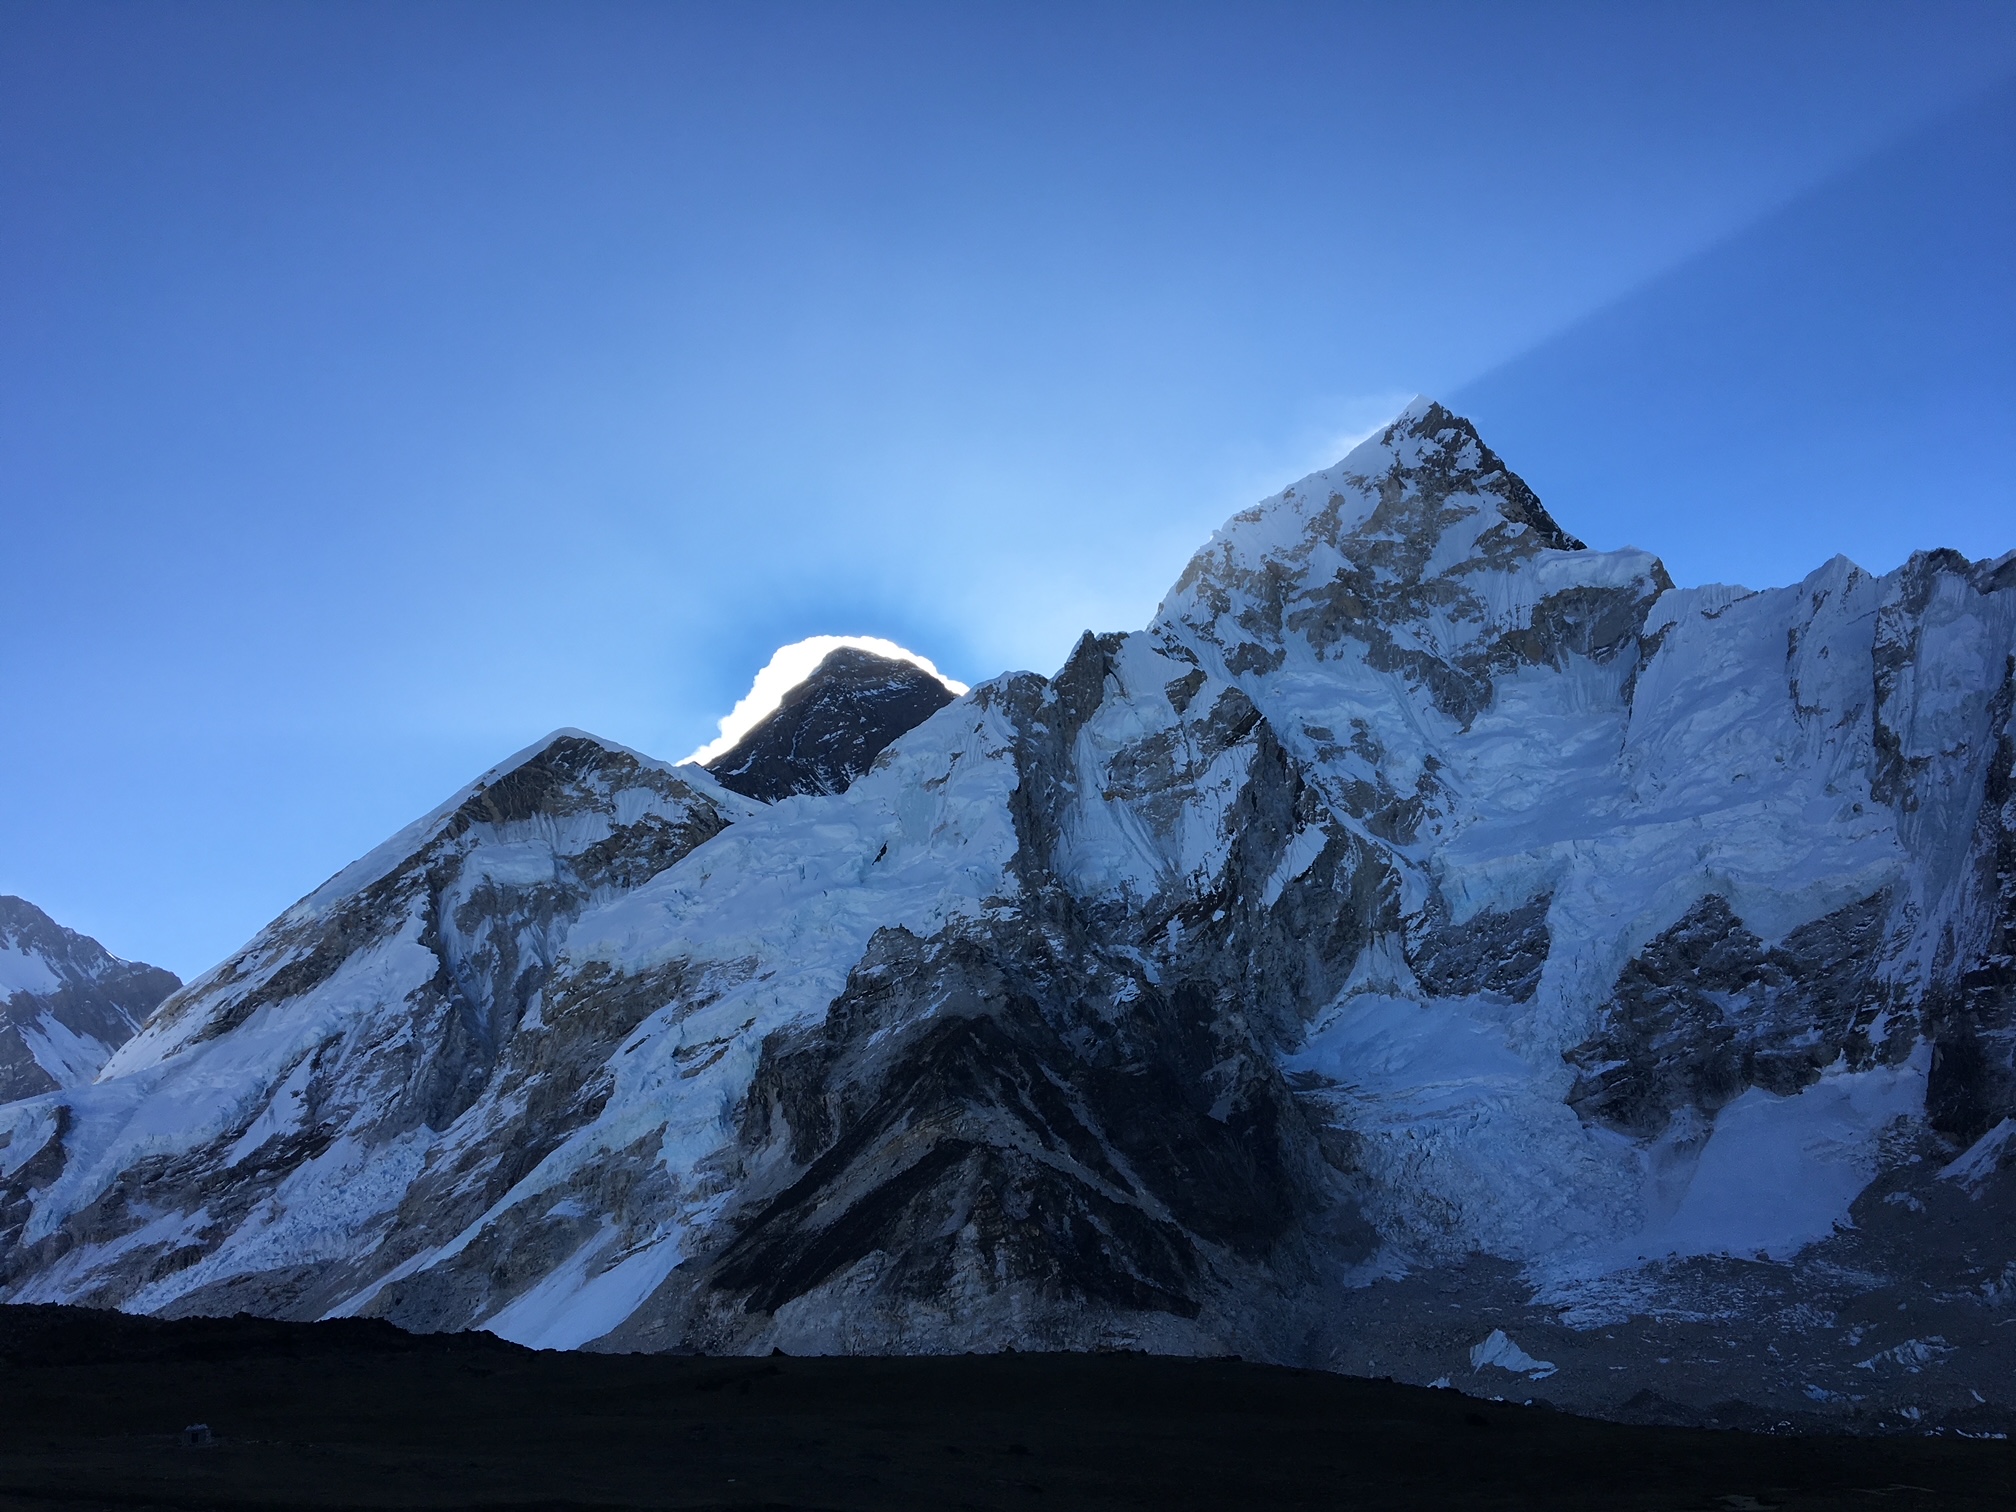 Proper acclimatization for an Everest Trek